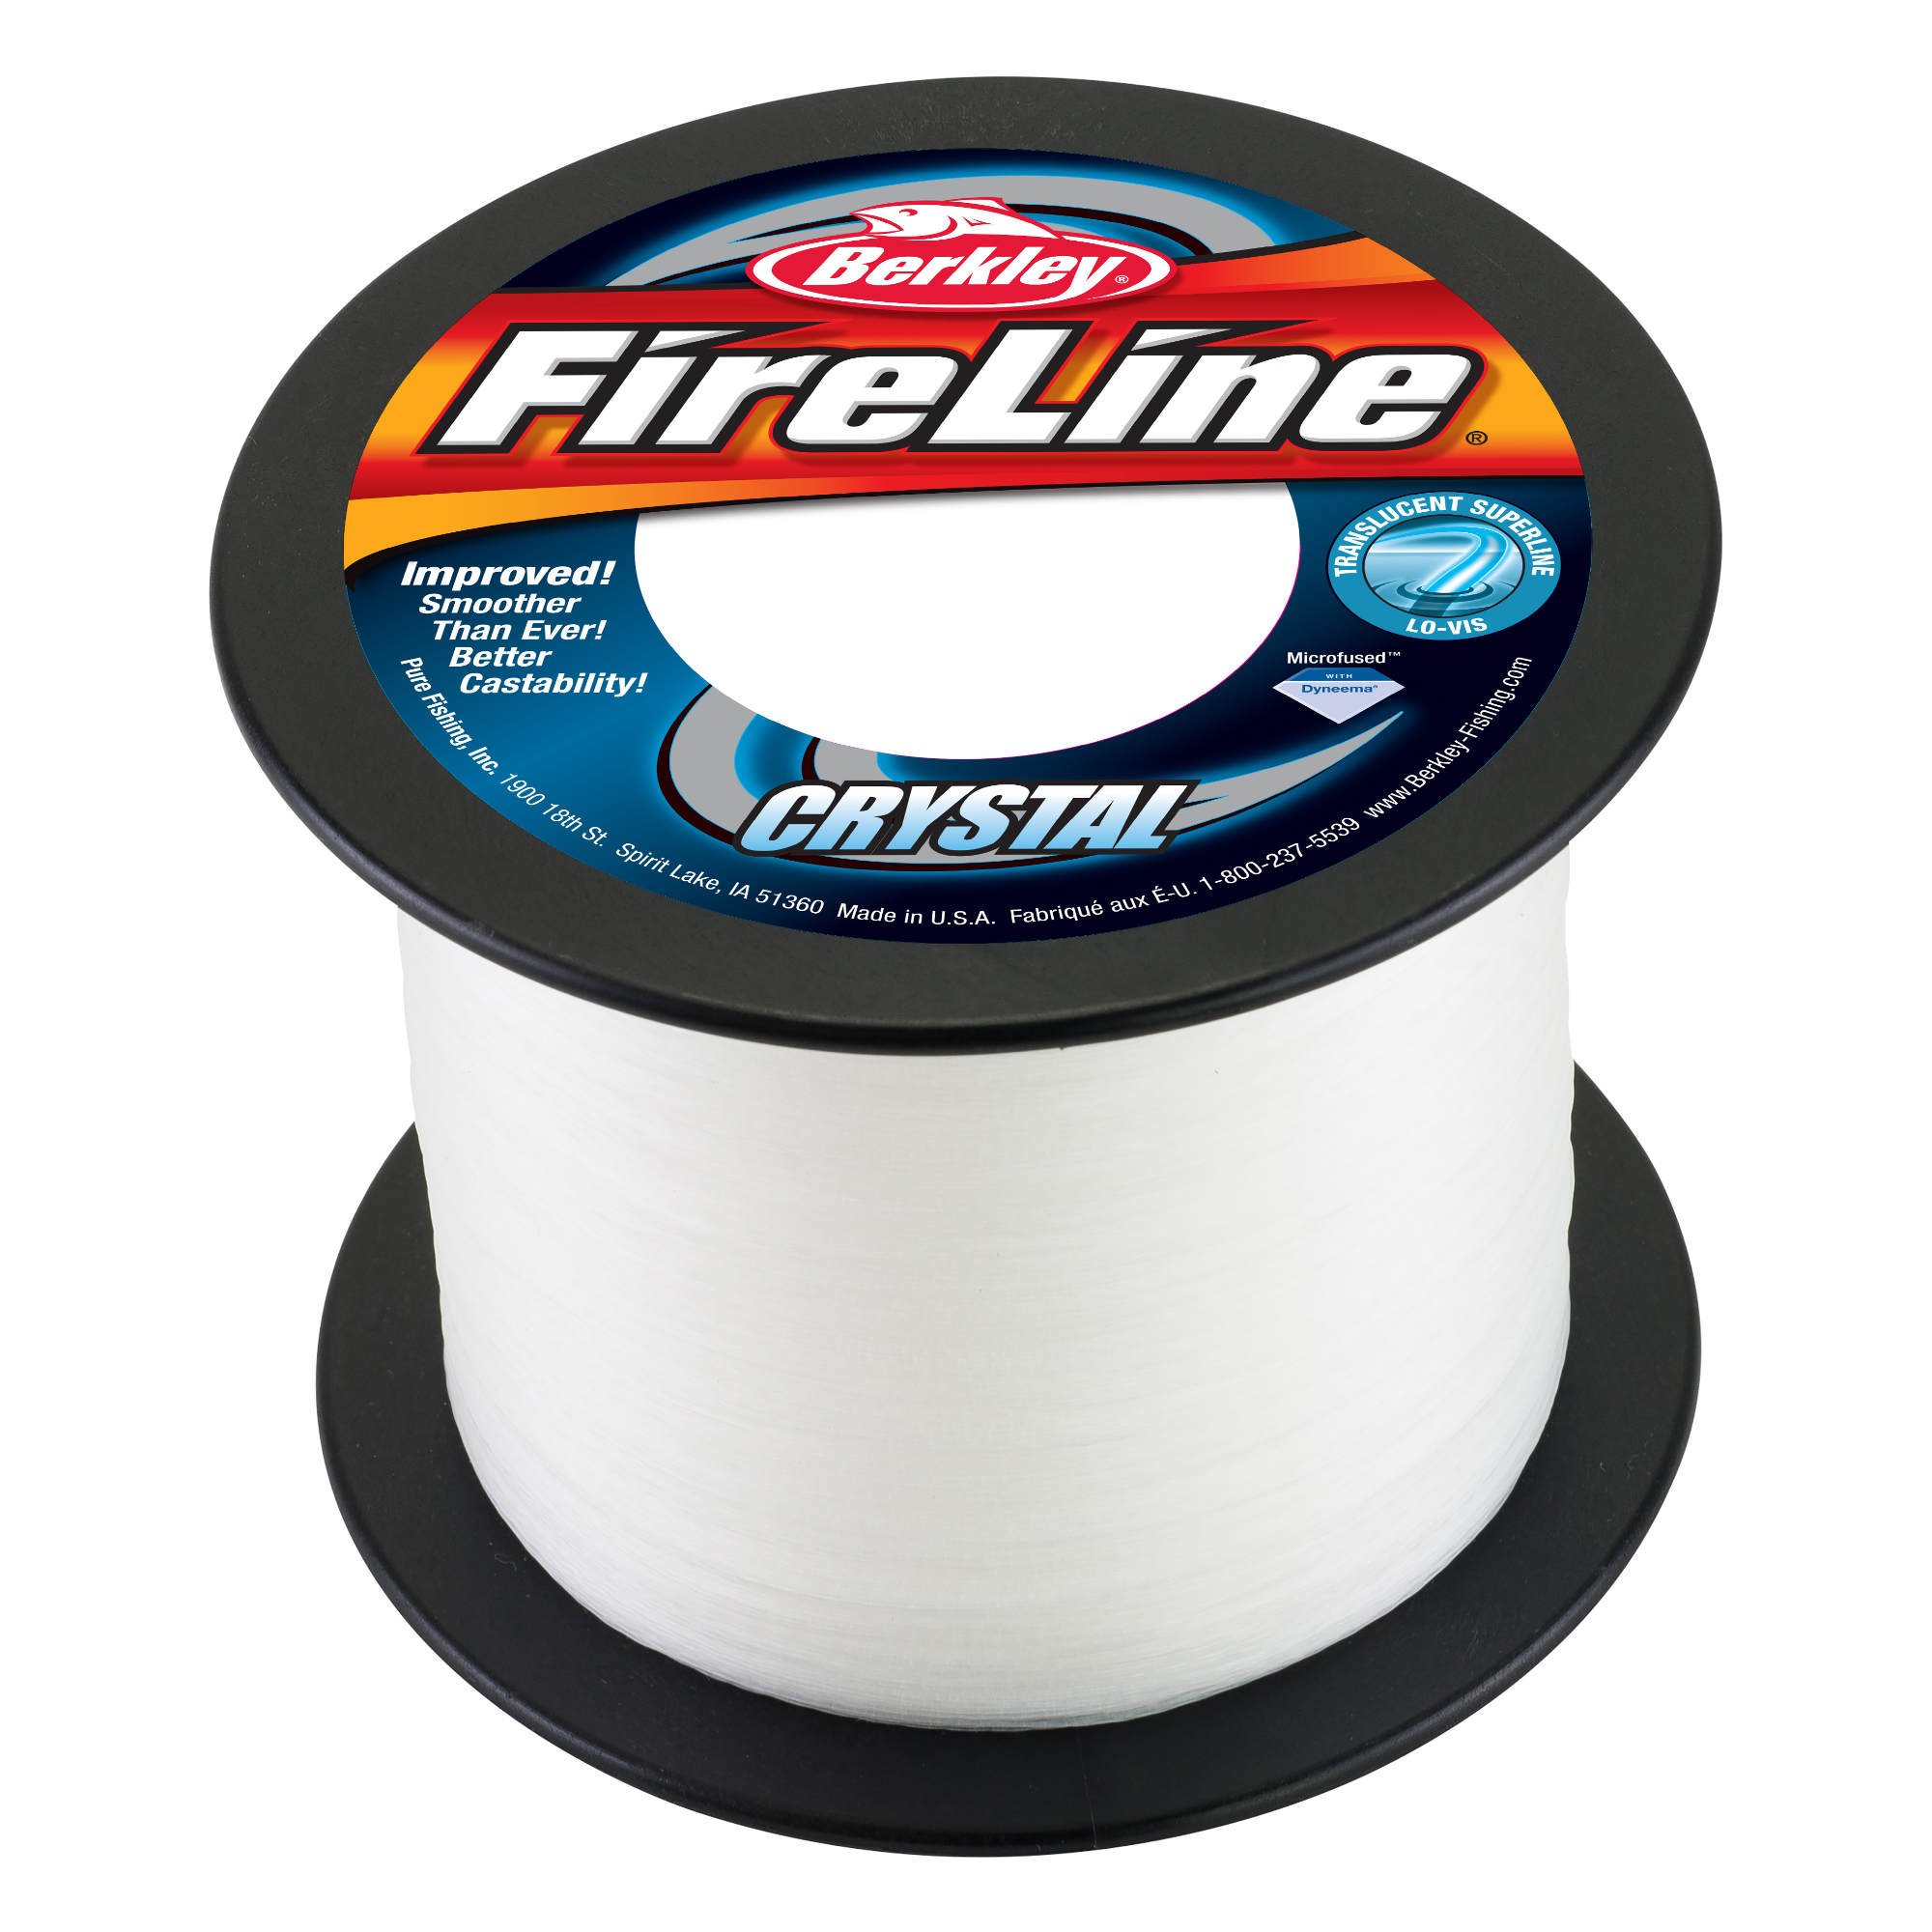 Berkley FireLine Fused Superline Fishing Line, Size: 4 lbs, Green